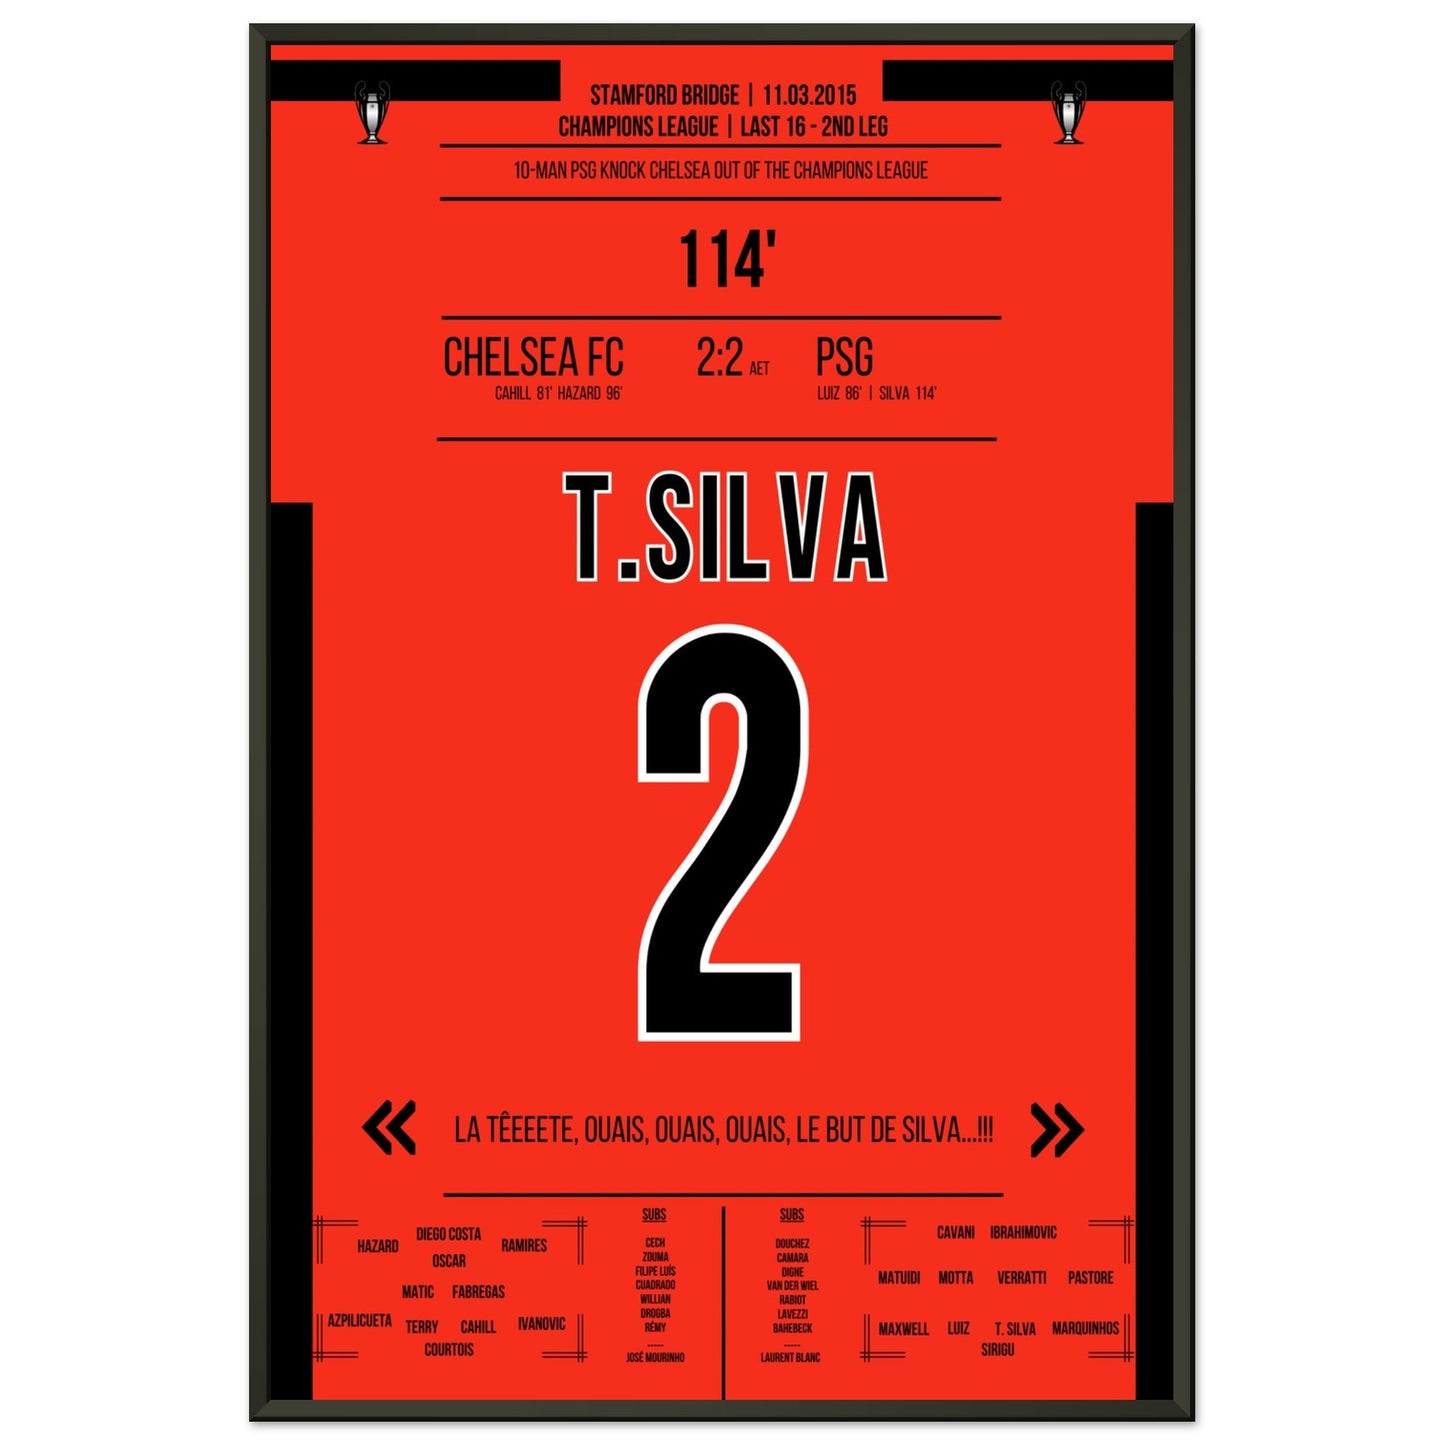 Thiago Silva's entscheidendes Kopfballtor im CL Achtelfinale gegen Chelsea 2015 60x90-cm-24x36-Schwarzer-Aluminiumrahmen